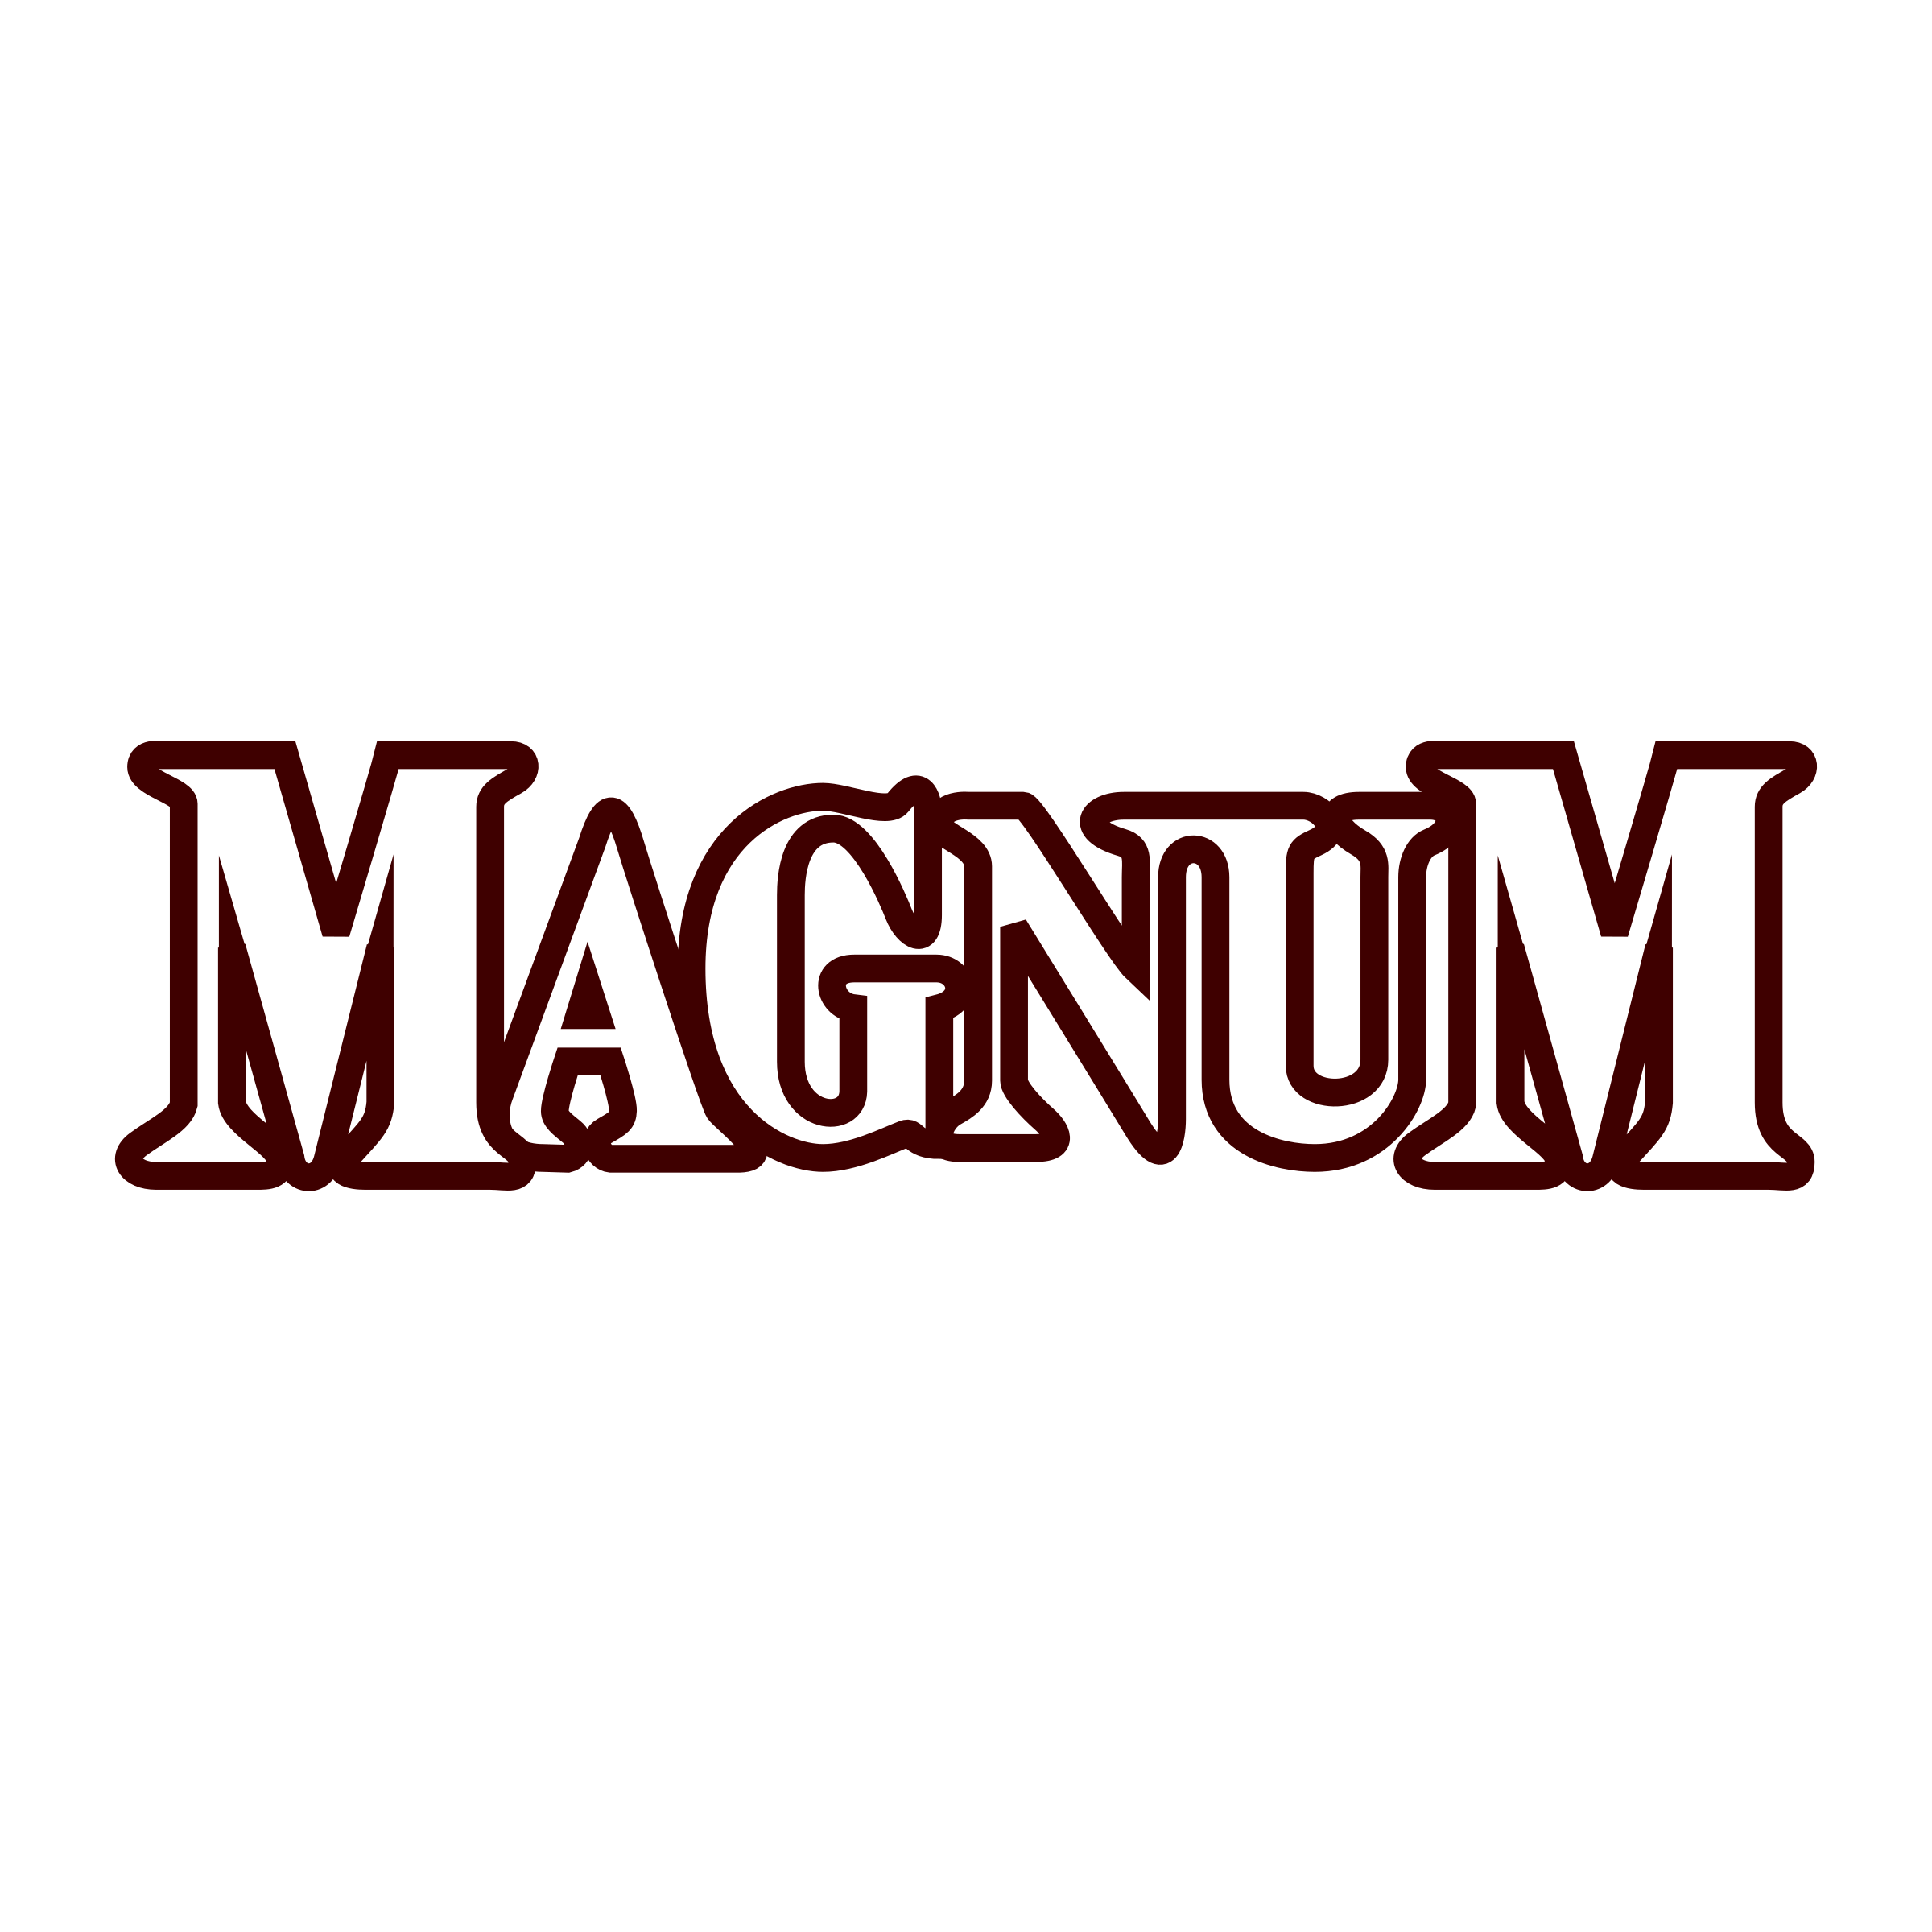 Magnum Logo PNG Transparent & SVG Vector.